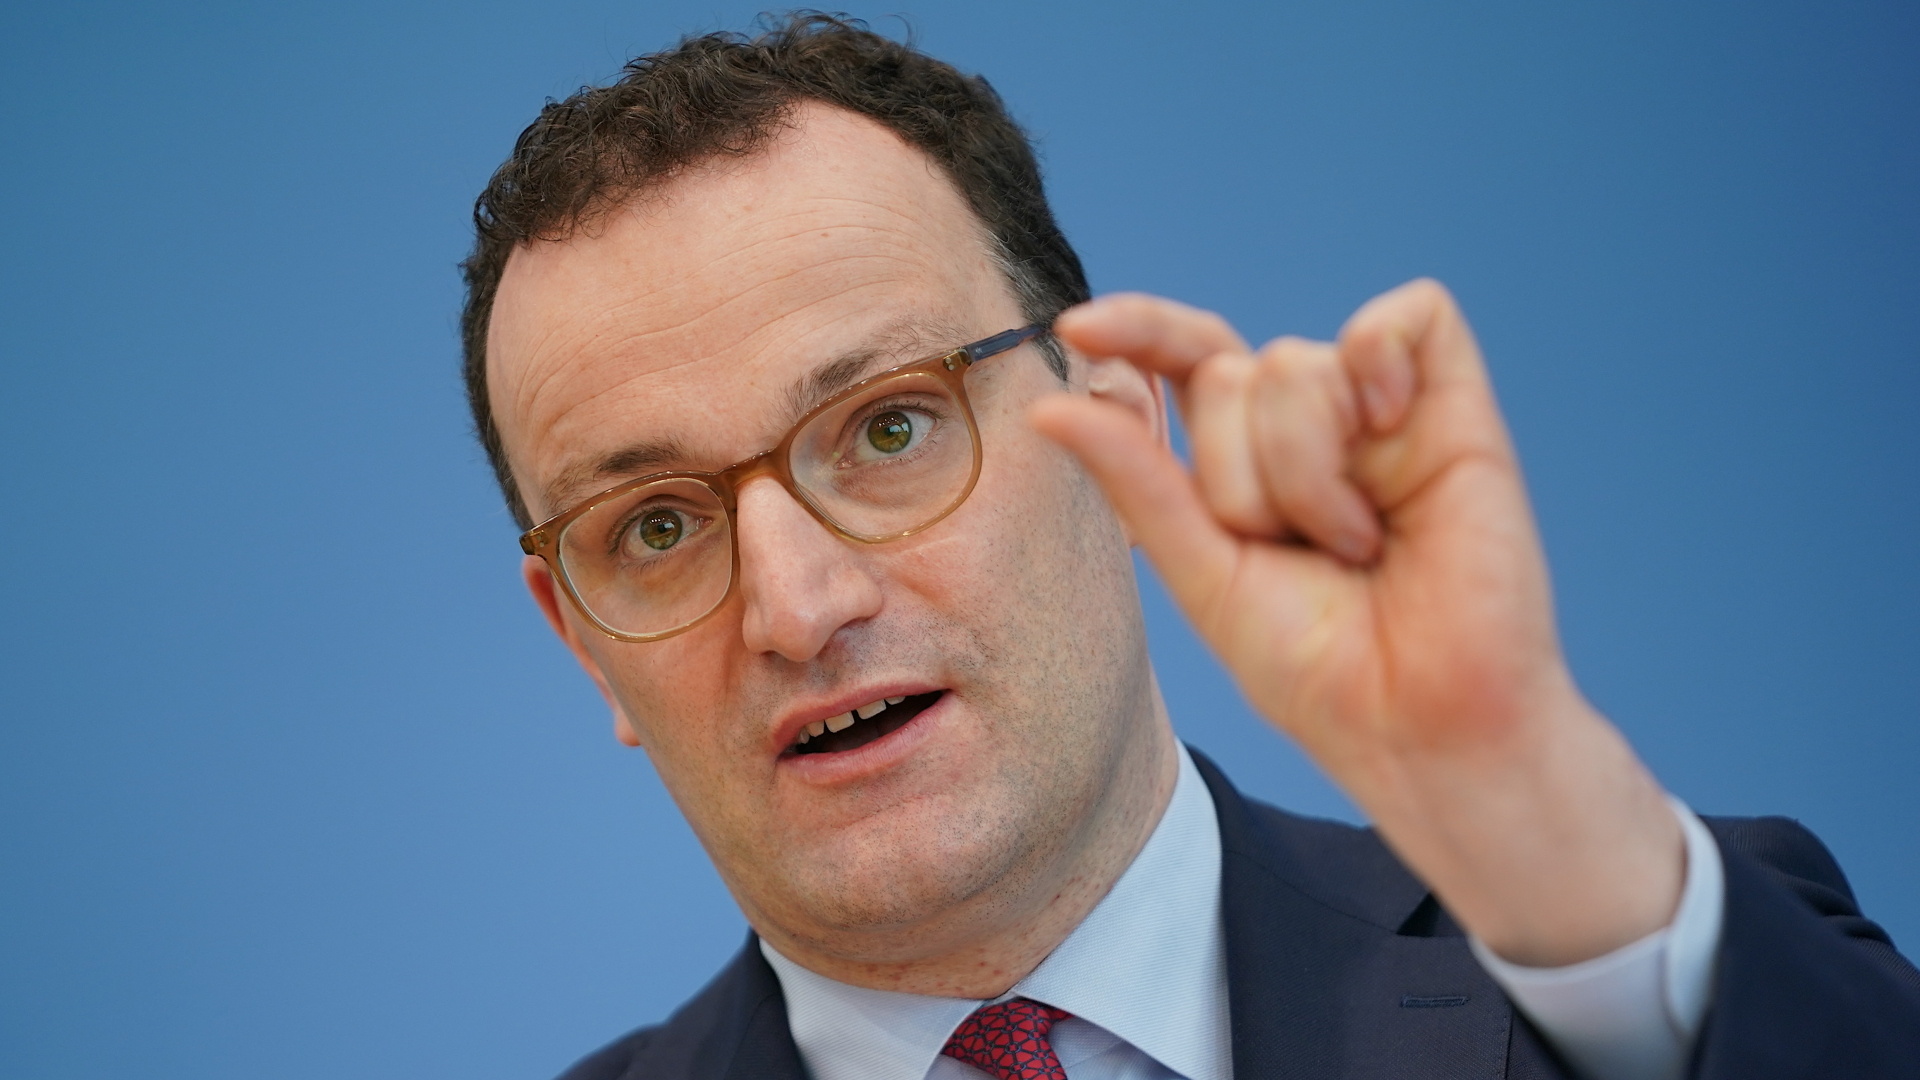 Gesundheitsminister Spahn zeigt "sehr wenig"-Geste